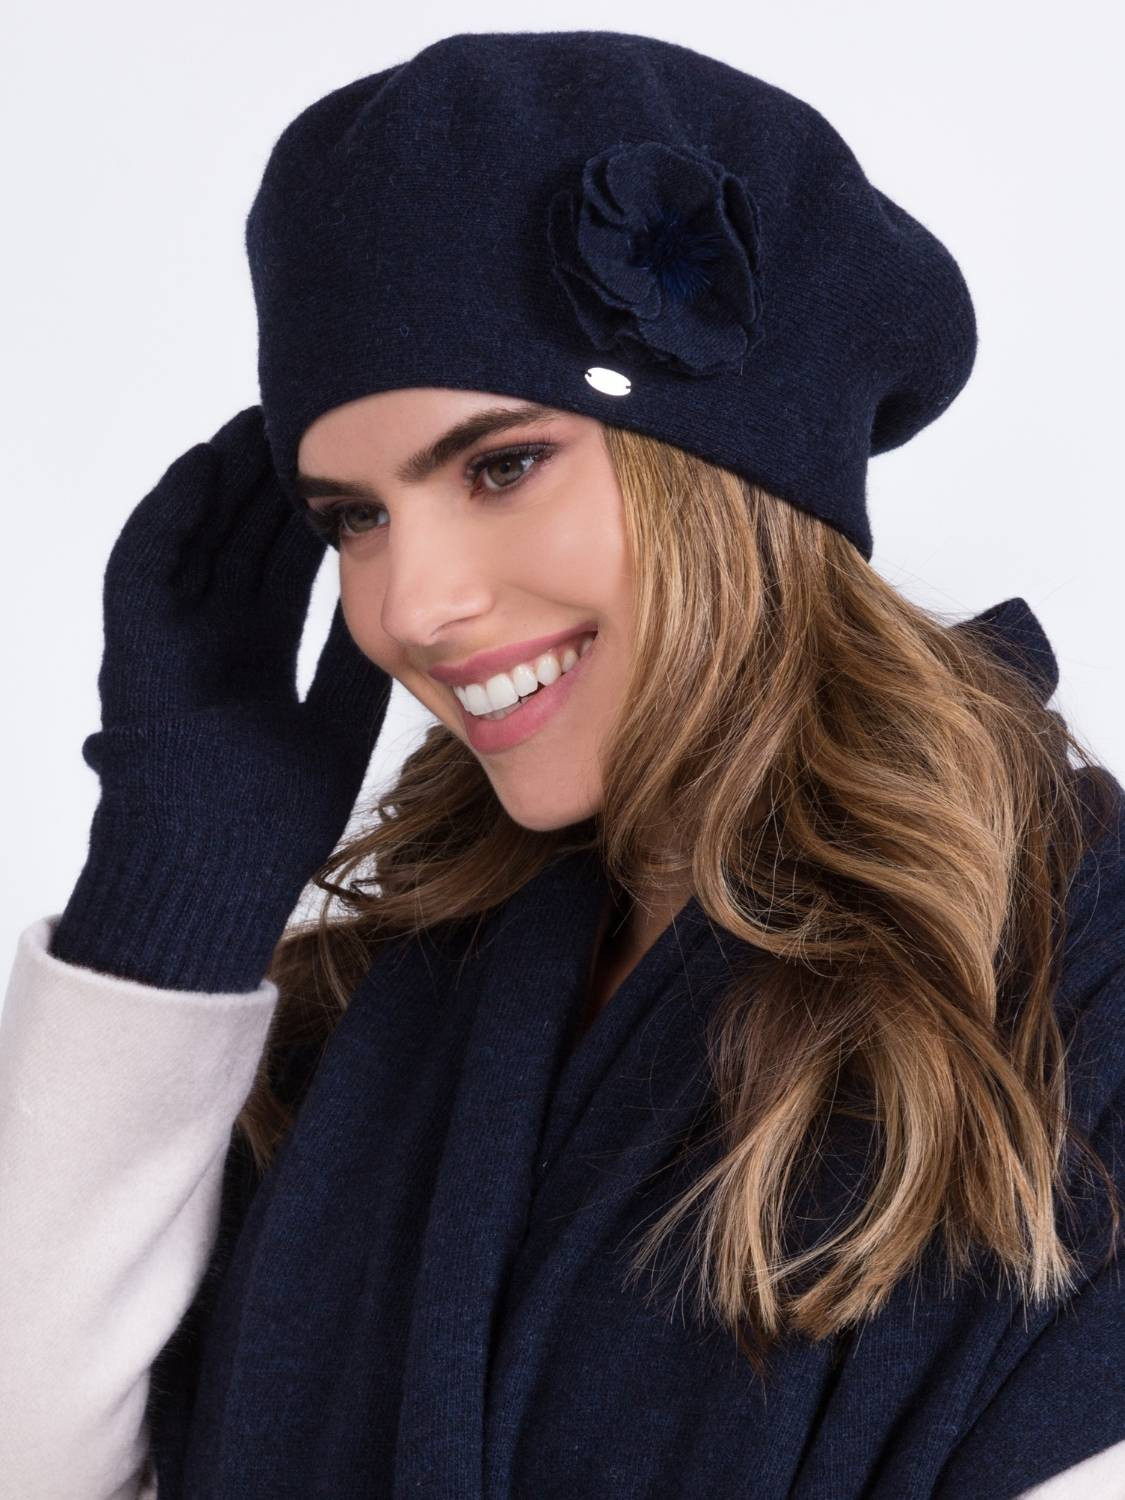 Elegant beret for women, BILUNA